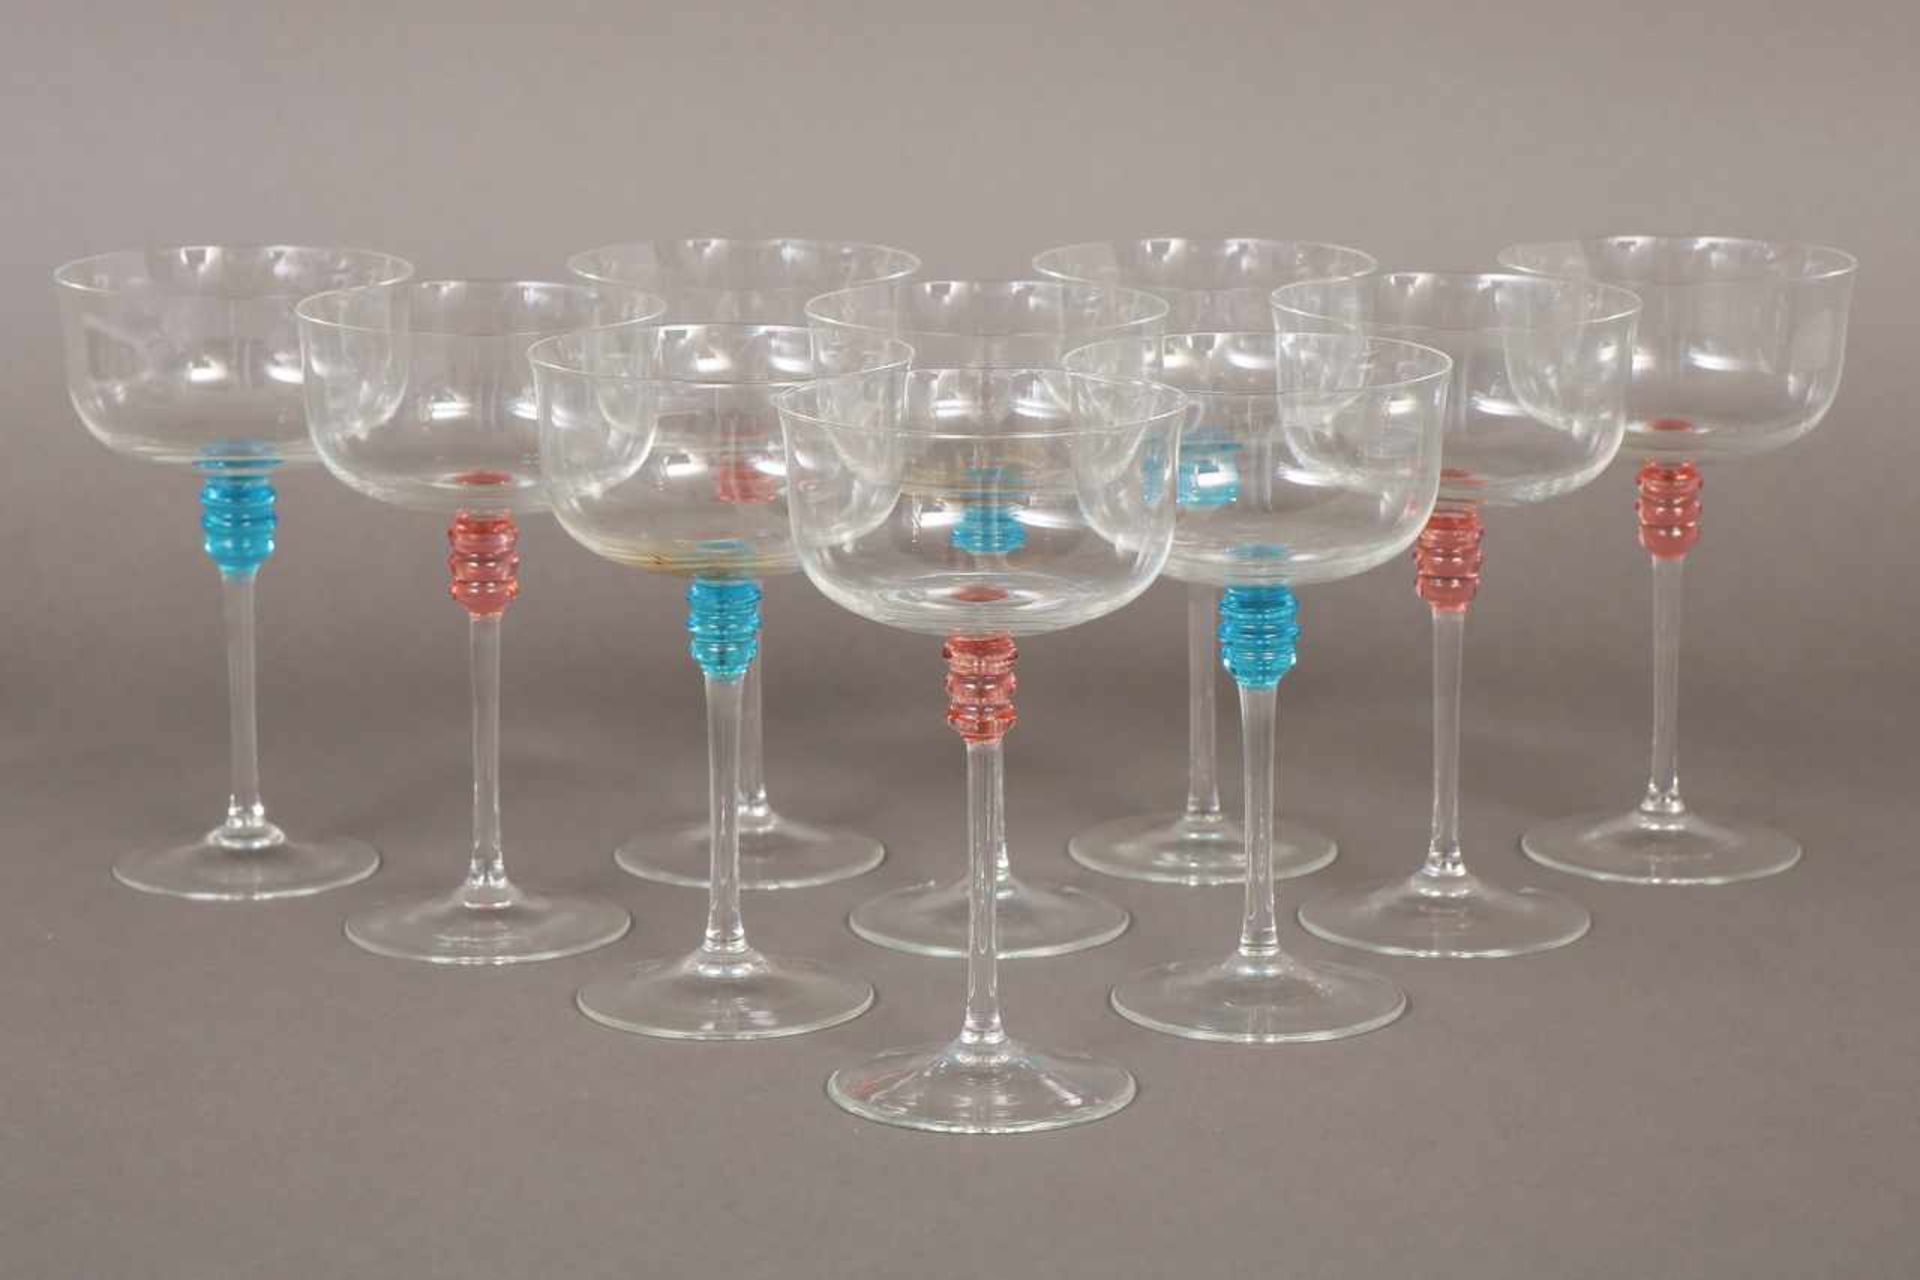 10 Champagnerschalen im Stile des Art Deco farbloses Glas, am Stiel blaue und rosafarbene